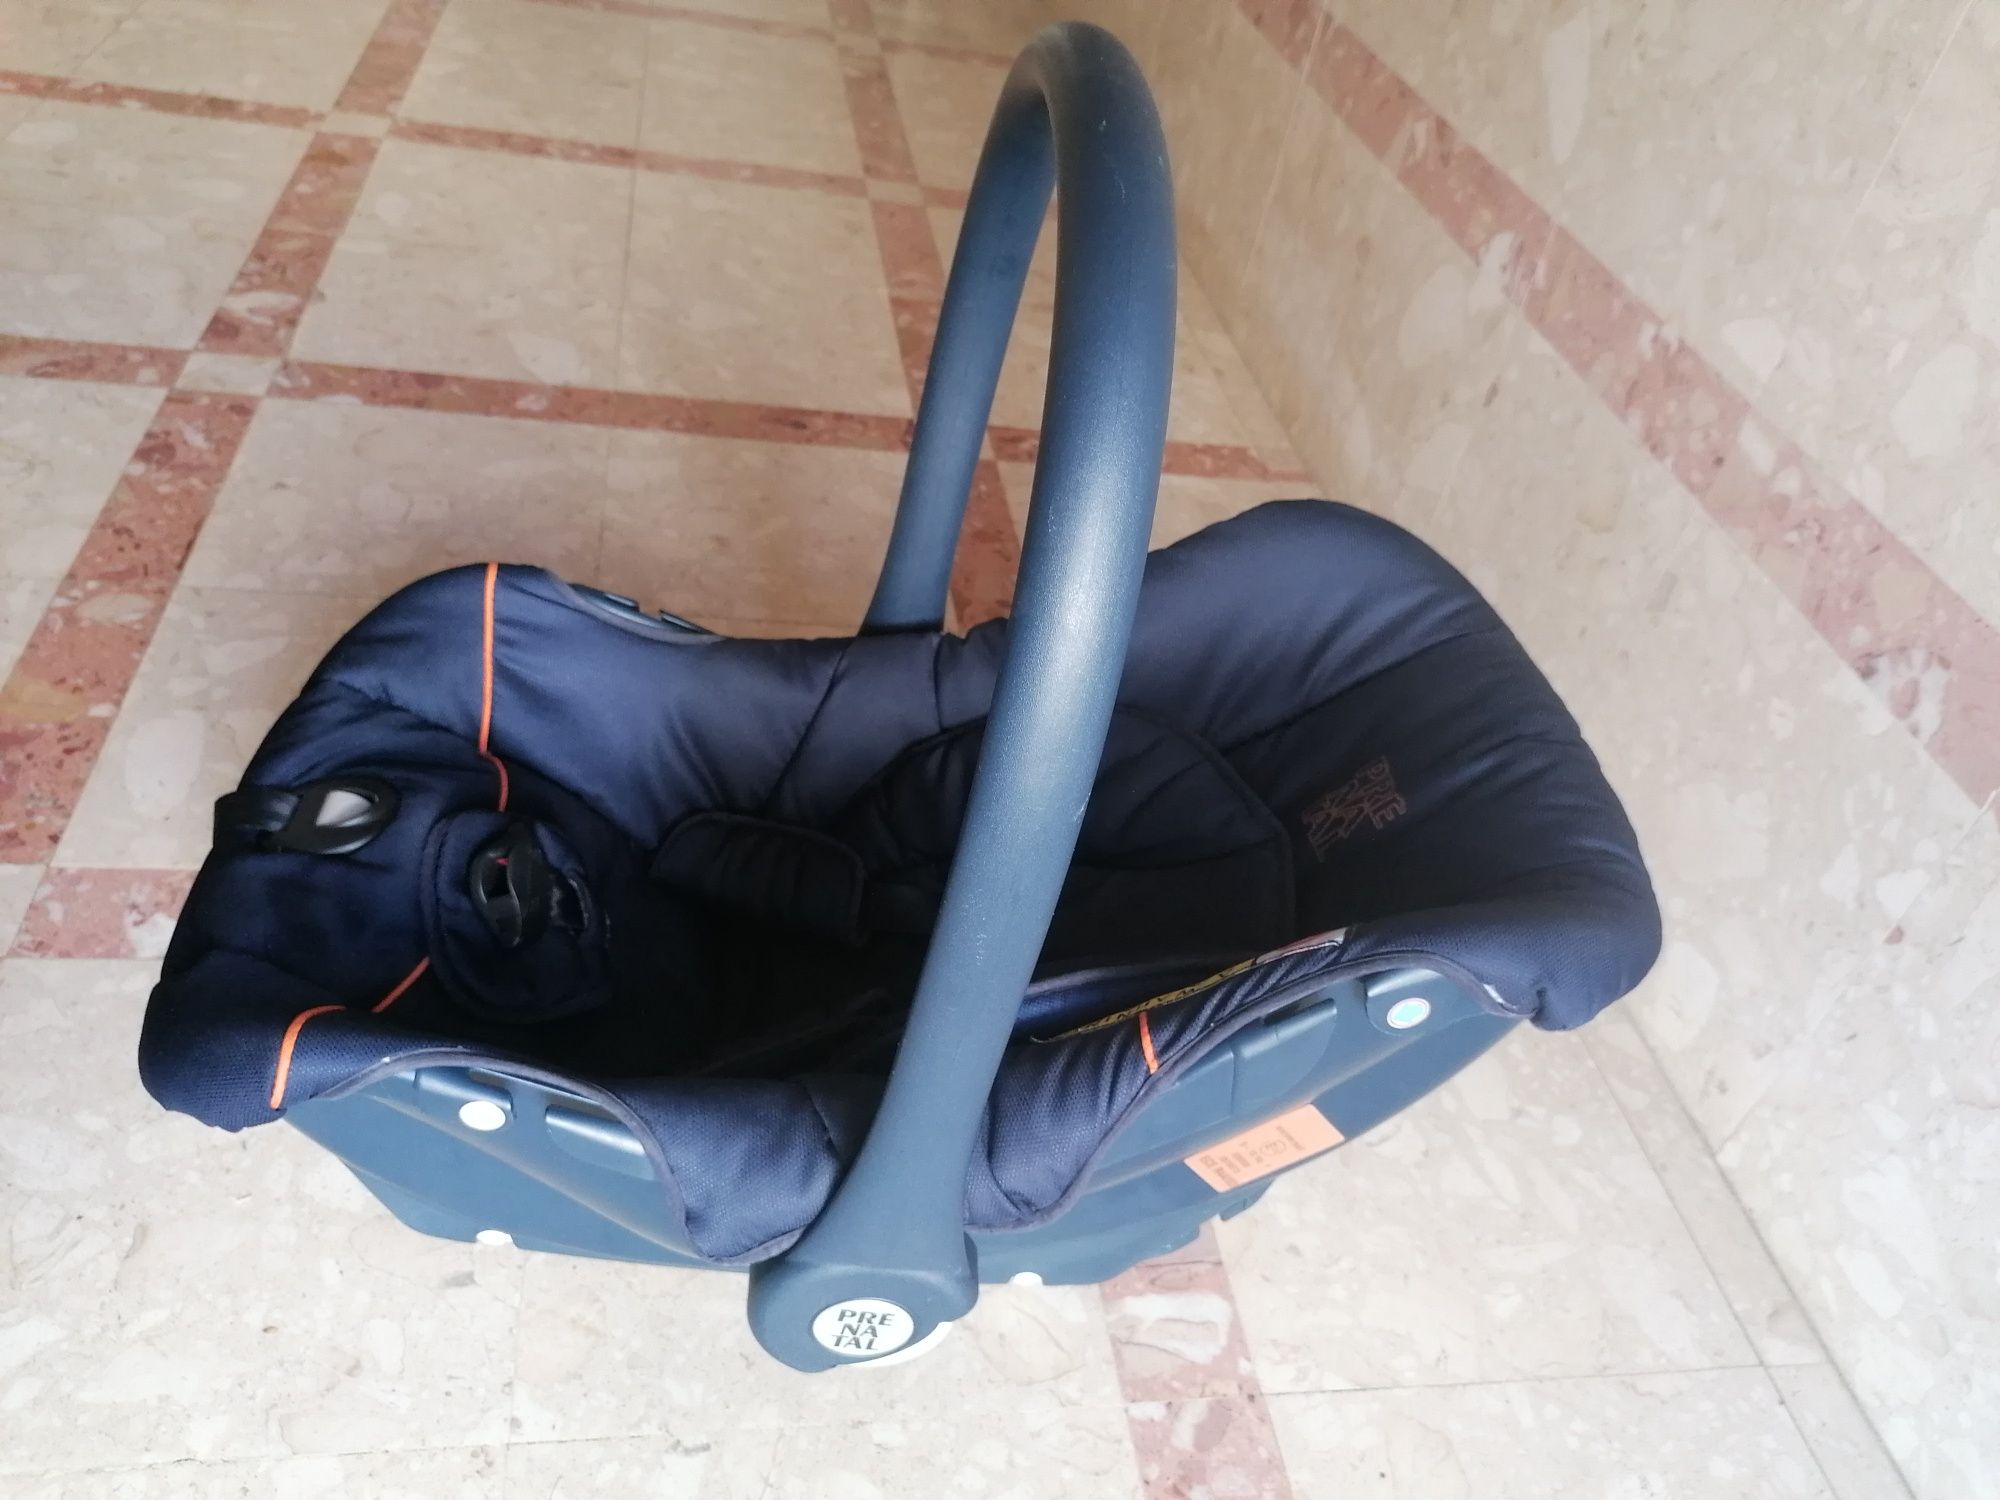 Cadeira Bébé "Ovo" Prénatal  (0 a 13 Kg)

Como novo